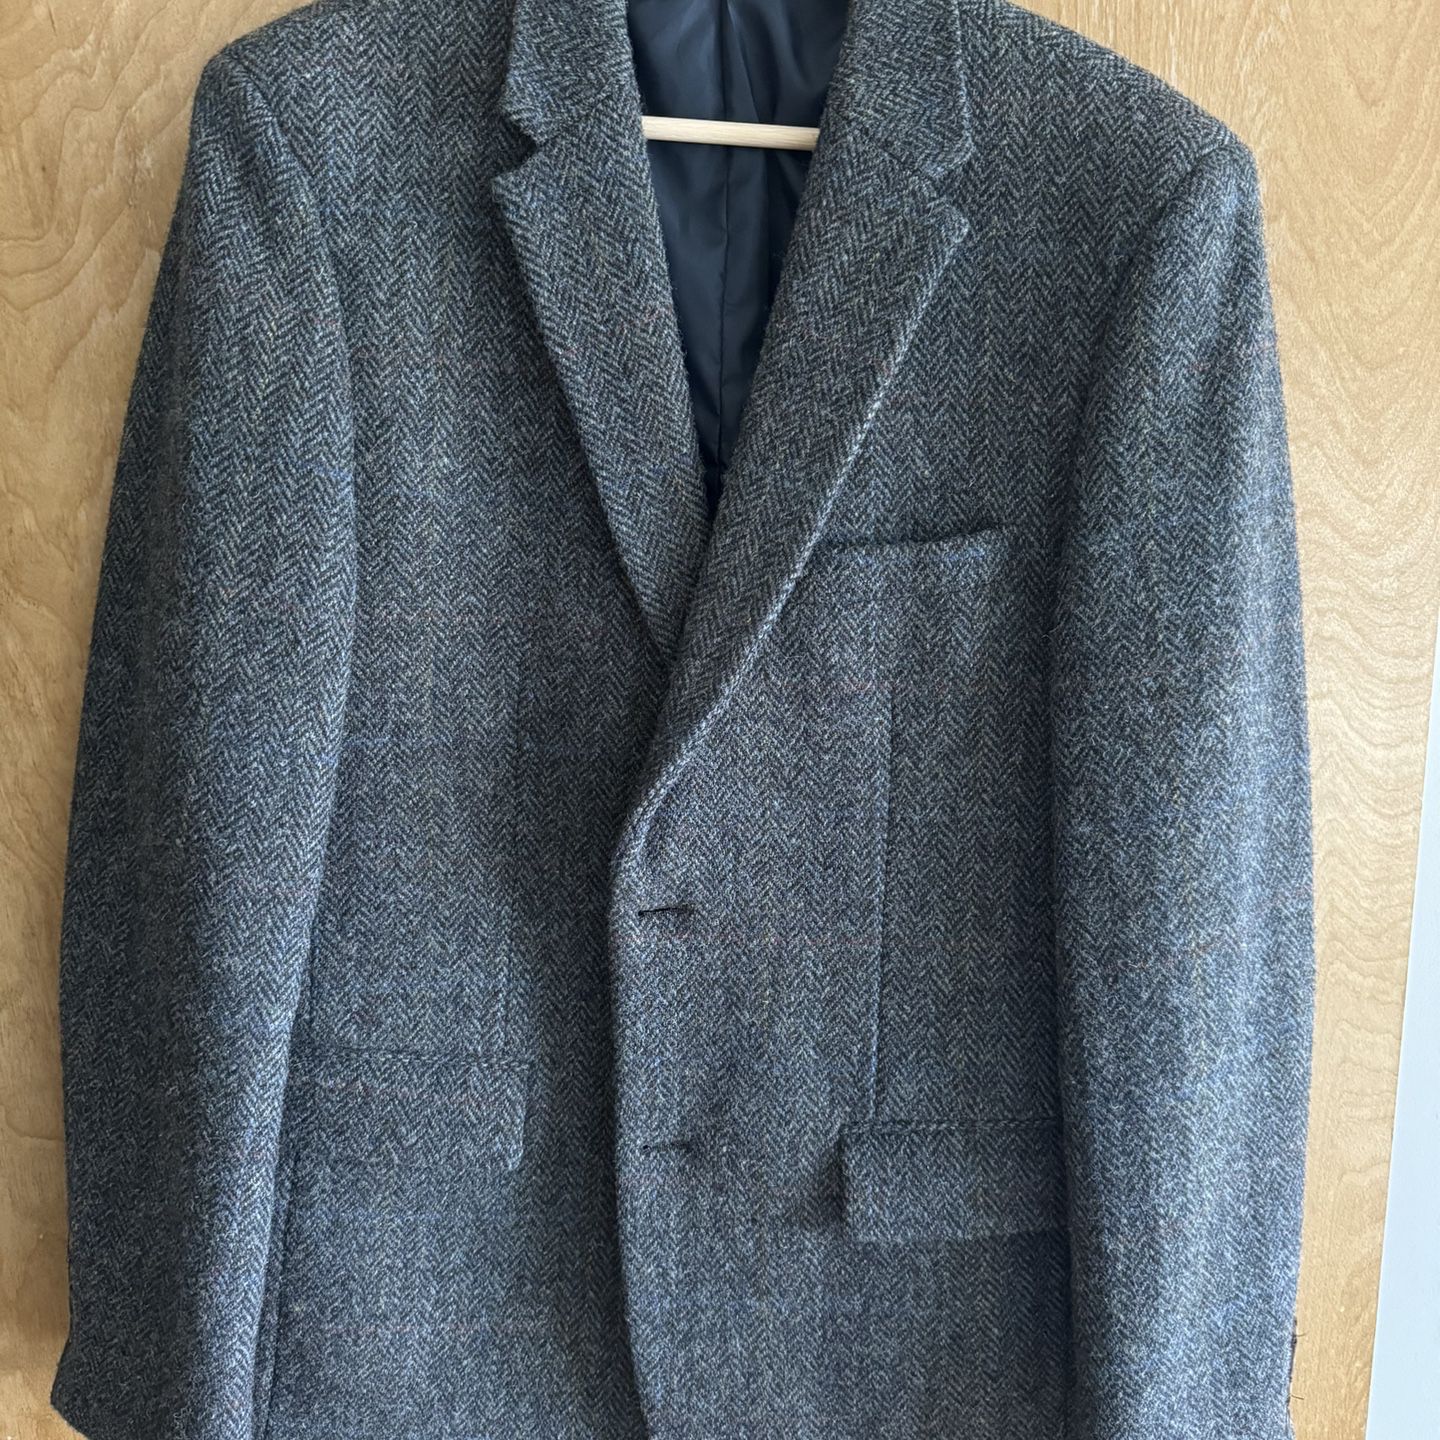 Harris Tweed - Gray Herringbone hand woven jacket - 38R